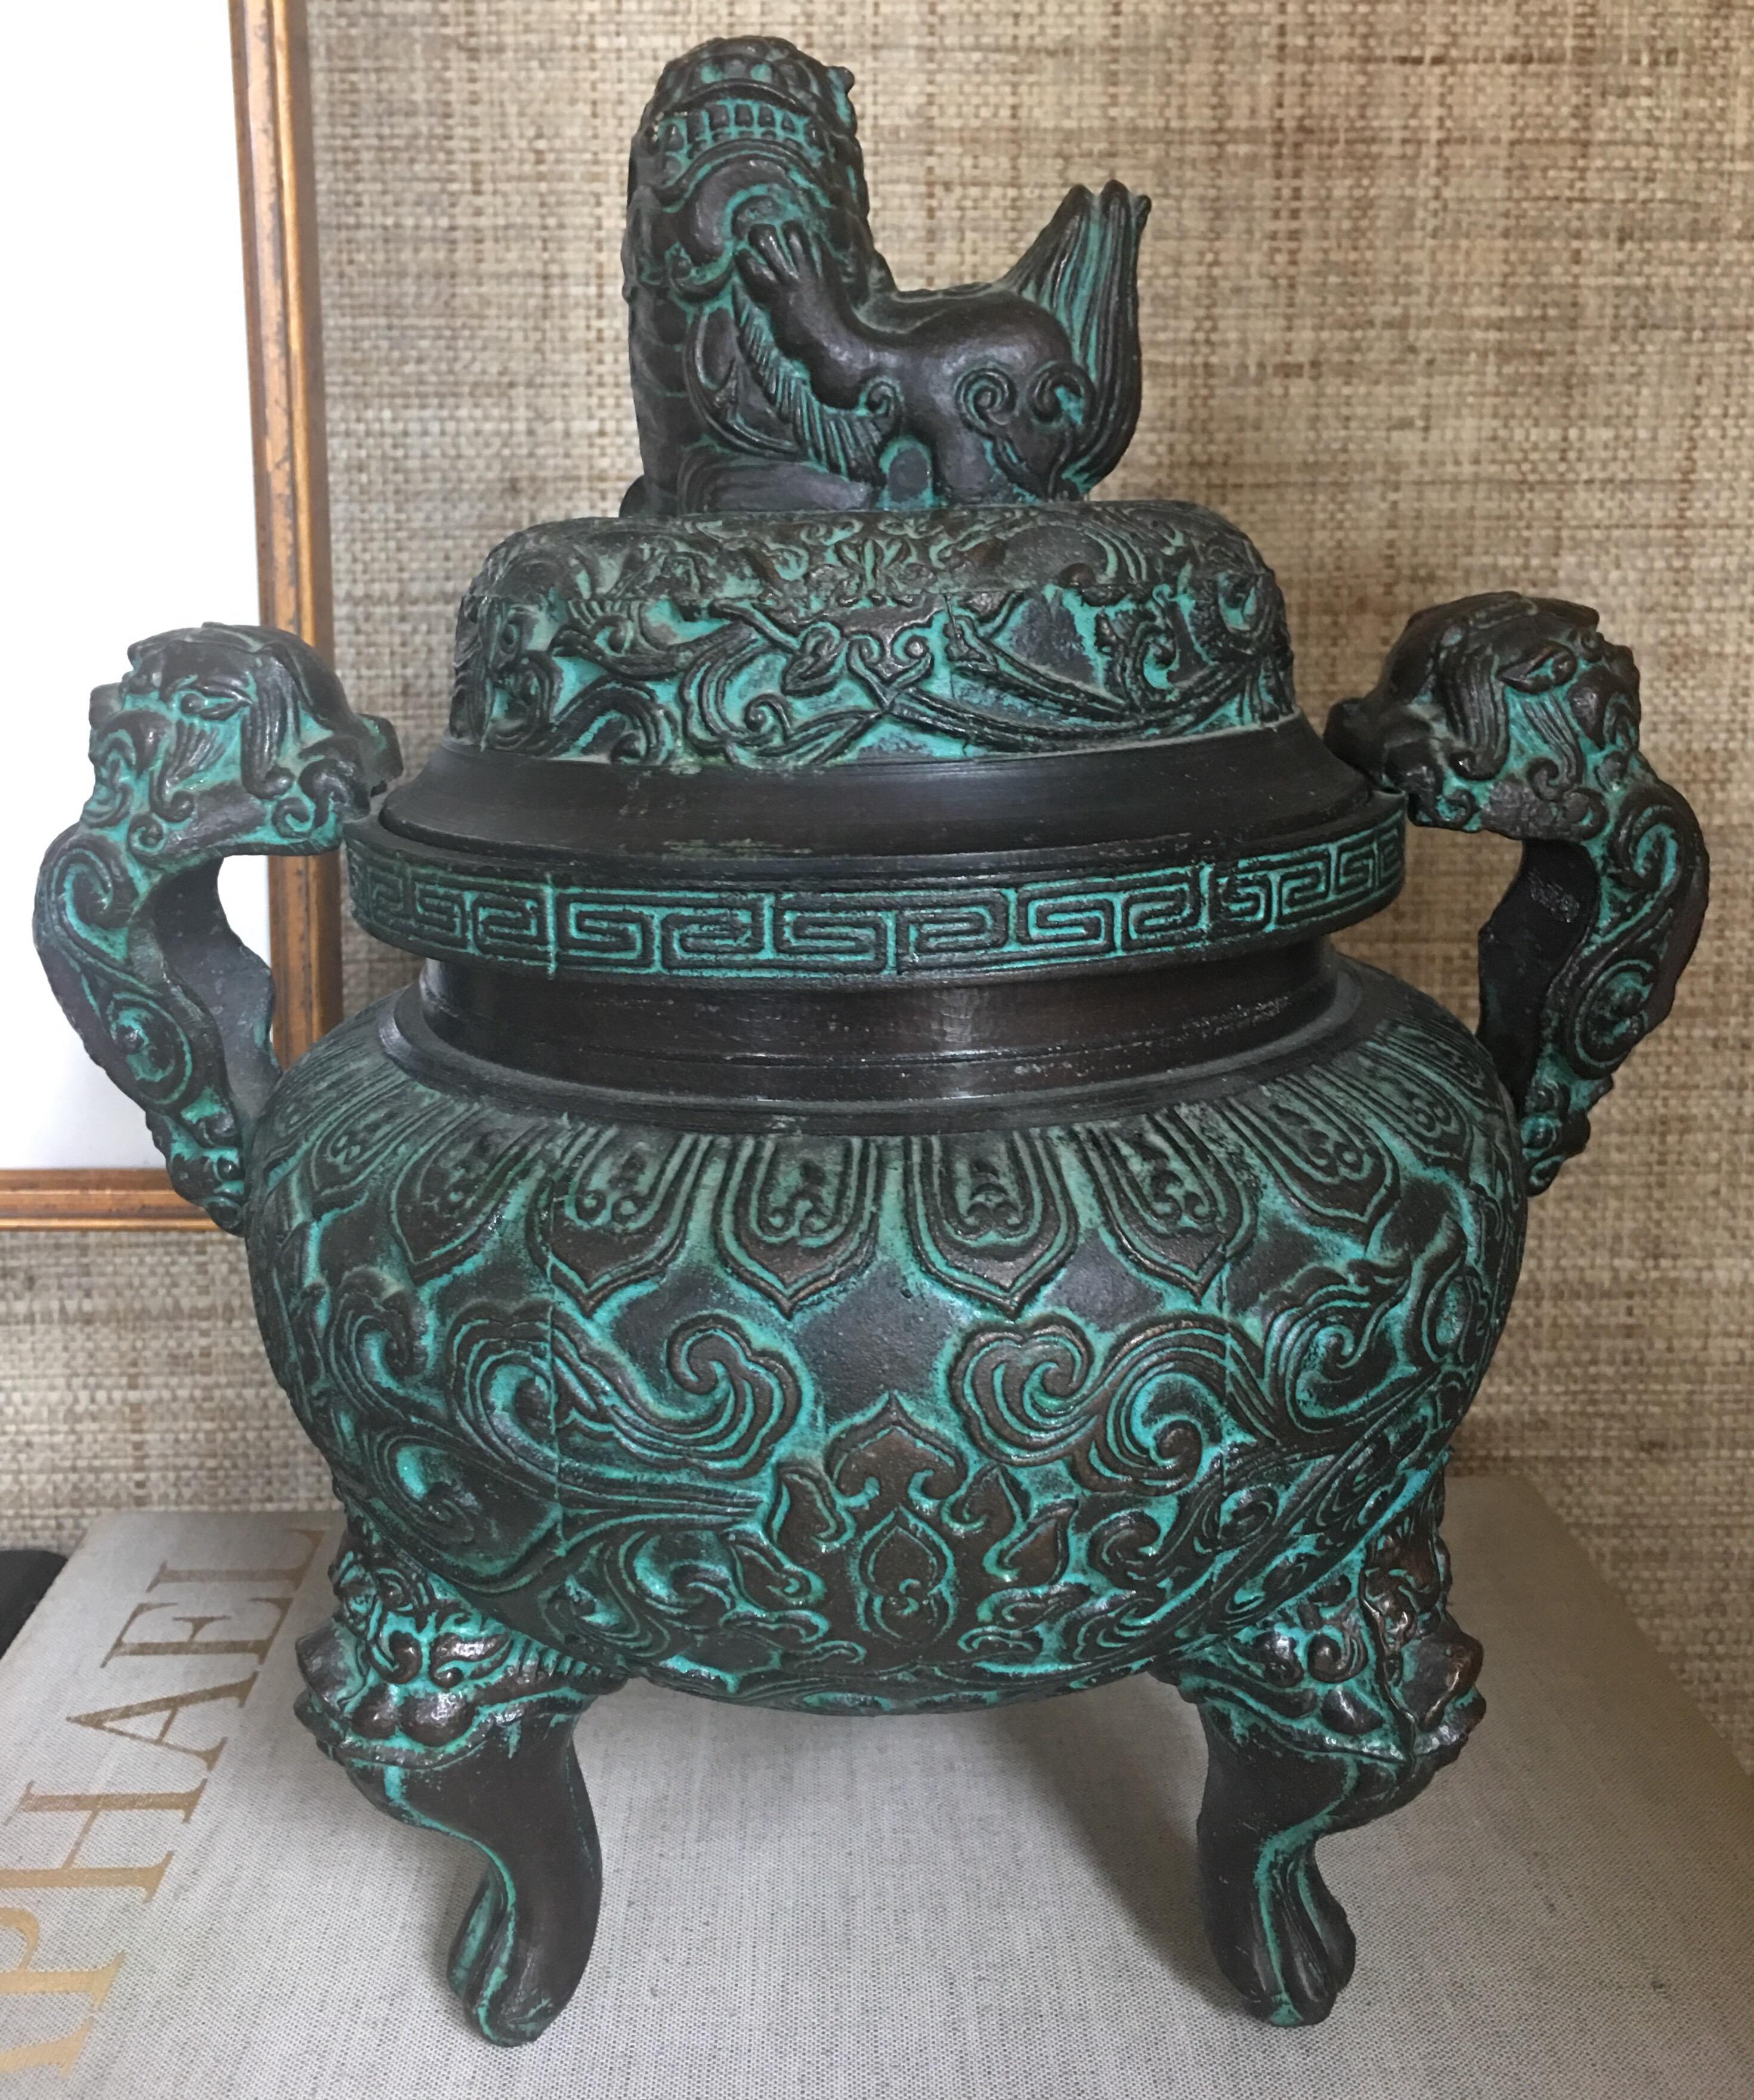 Eiskübel im asiatischen Stil der Jahrhundertmitte nach Art von James Mont. Dieses detailreiche Metallstück ist mit einer Bronzeimitation in Grüntönen und einer komplizierten geometrischen Gravur und Prägung versehen. Der Innenraum ist mit einer